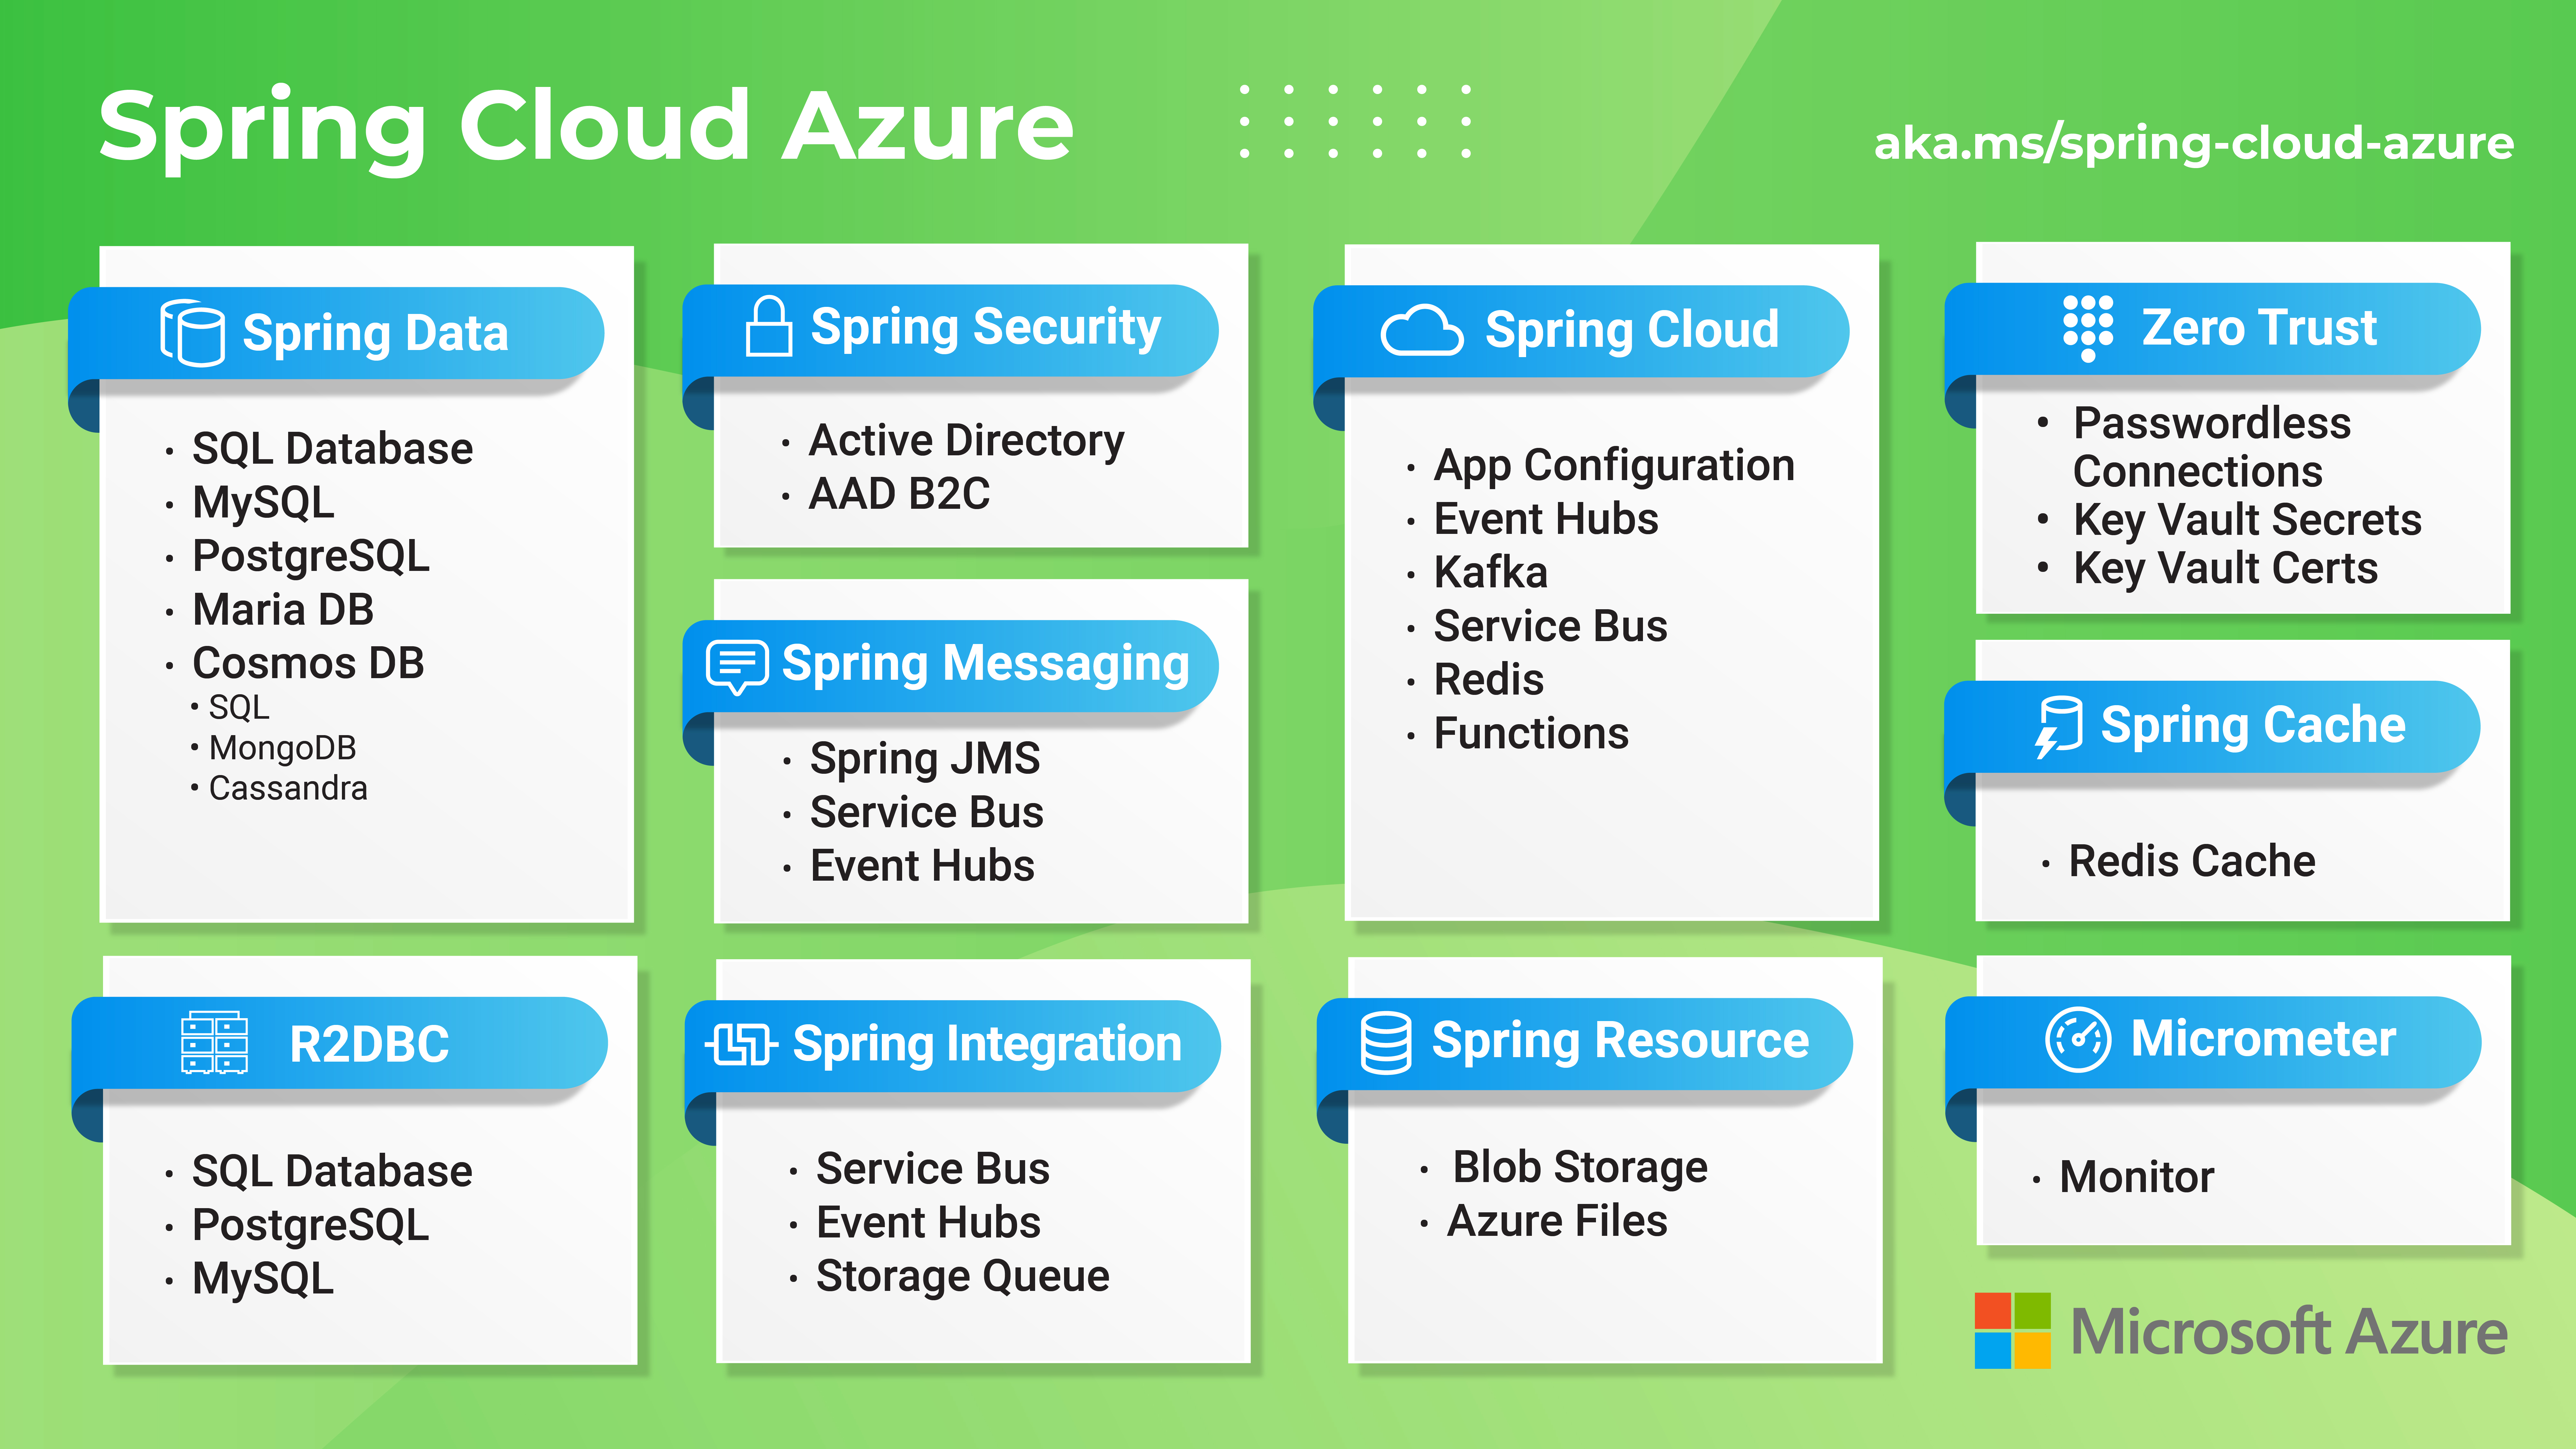 Spring Cloud Azure özelliklerine genel bakış sağlayan diyagram.